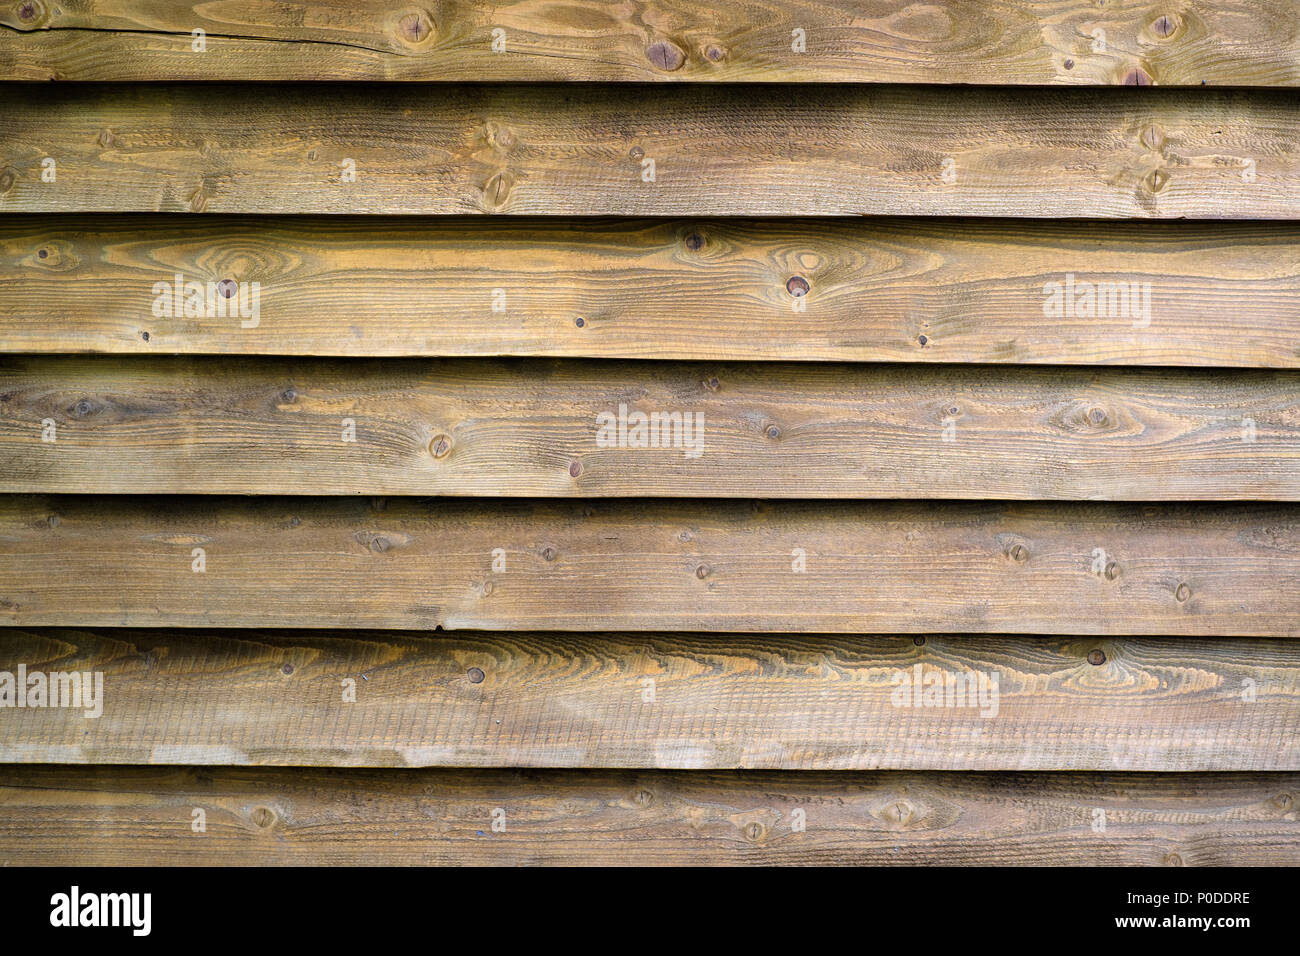 La texture de la planche en bois Banque D'Images